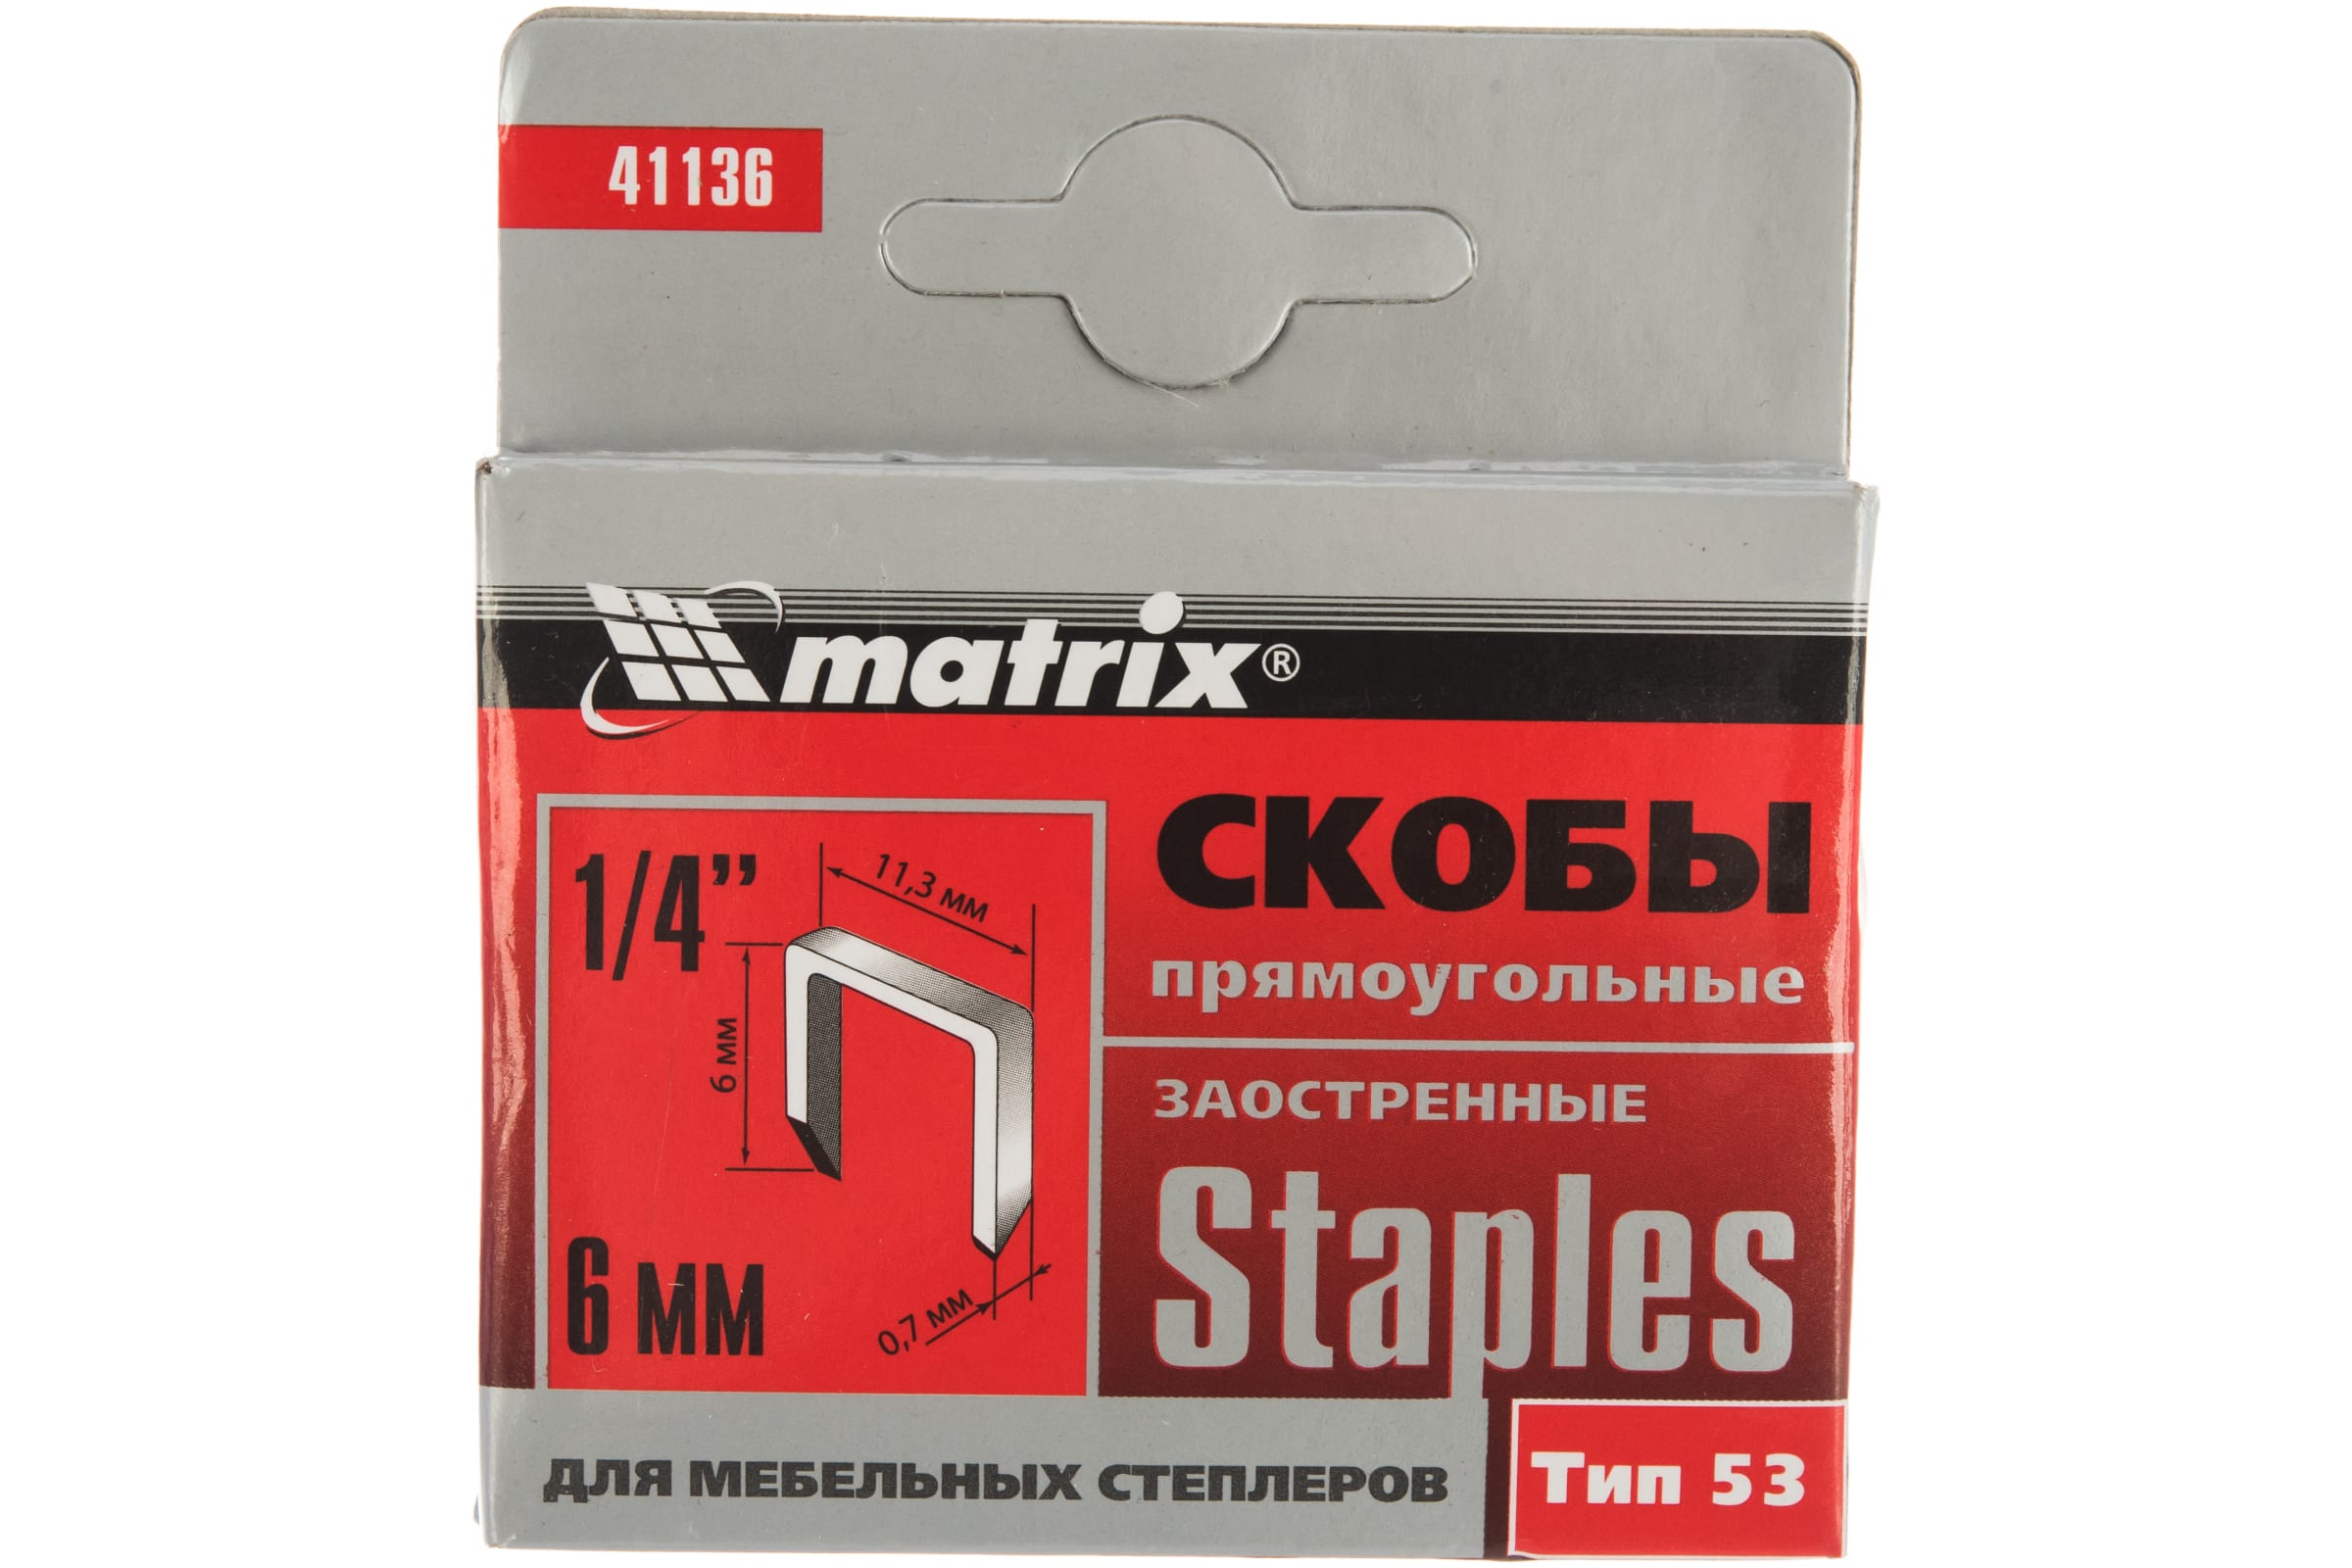 Скобы для электростеплера MATRIX 41136 скобы для электростеплера matrix 41120